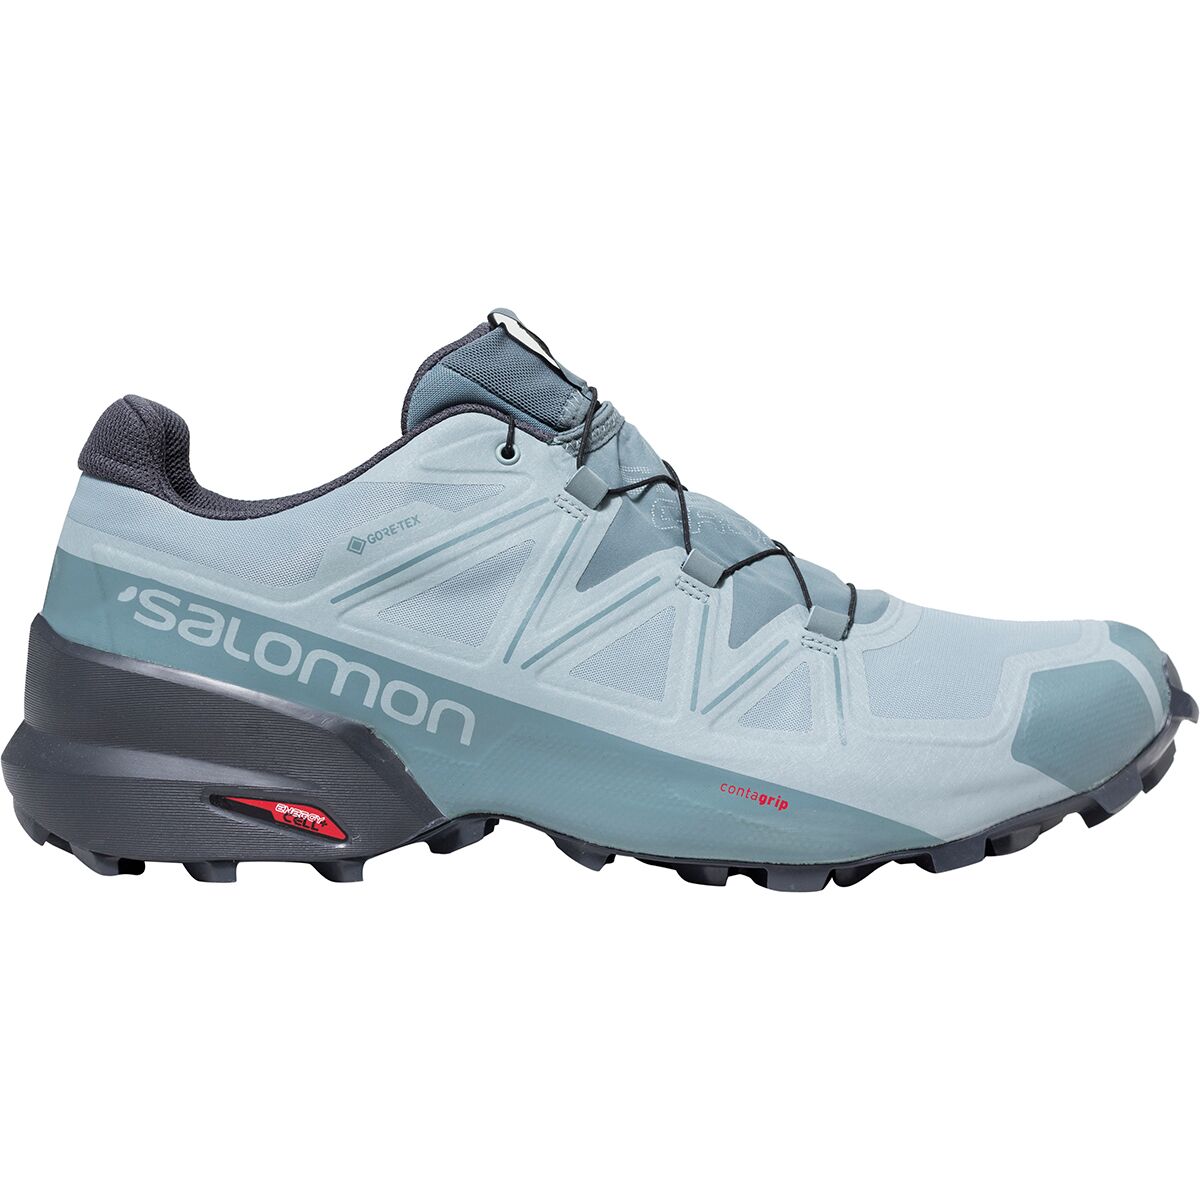 Speedcross 5 GTX Trail Running Shoe - Men